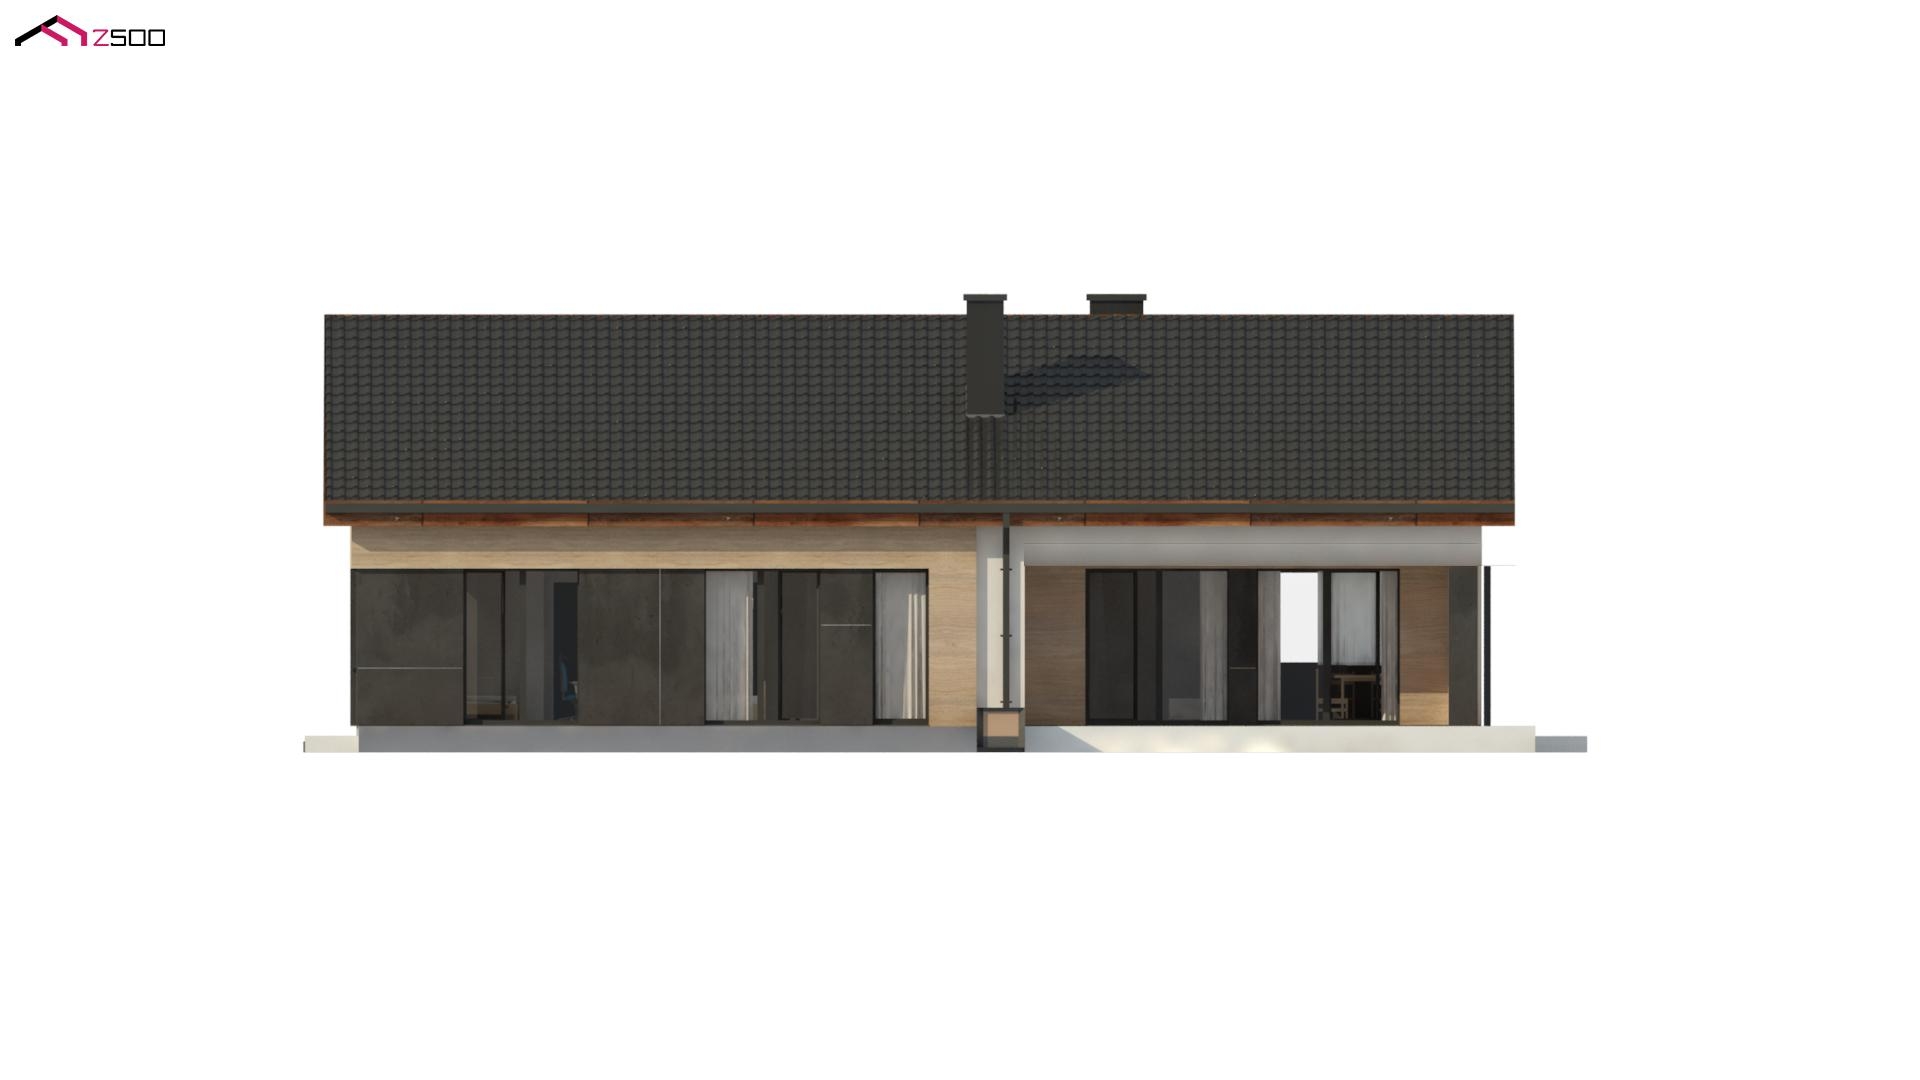 nowoczesny dom parterowy wolnostojący zadaszenie biały czarny dach drewniane wykończenie prostokątny